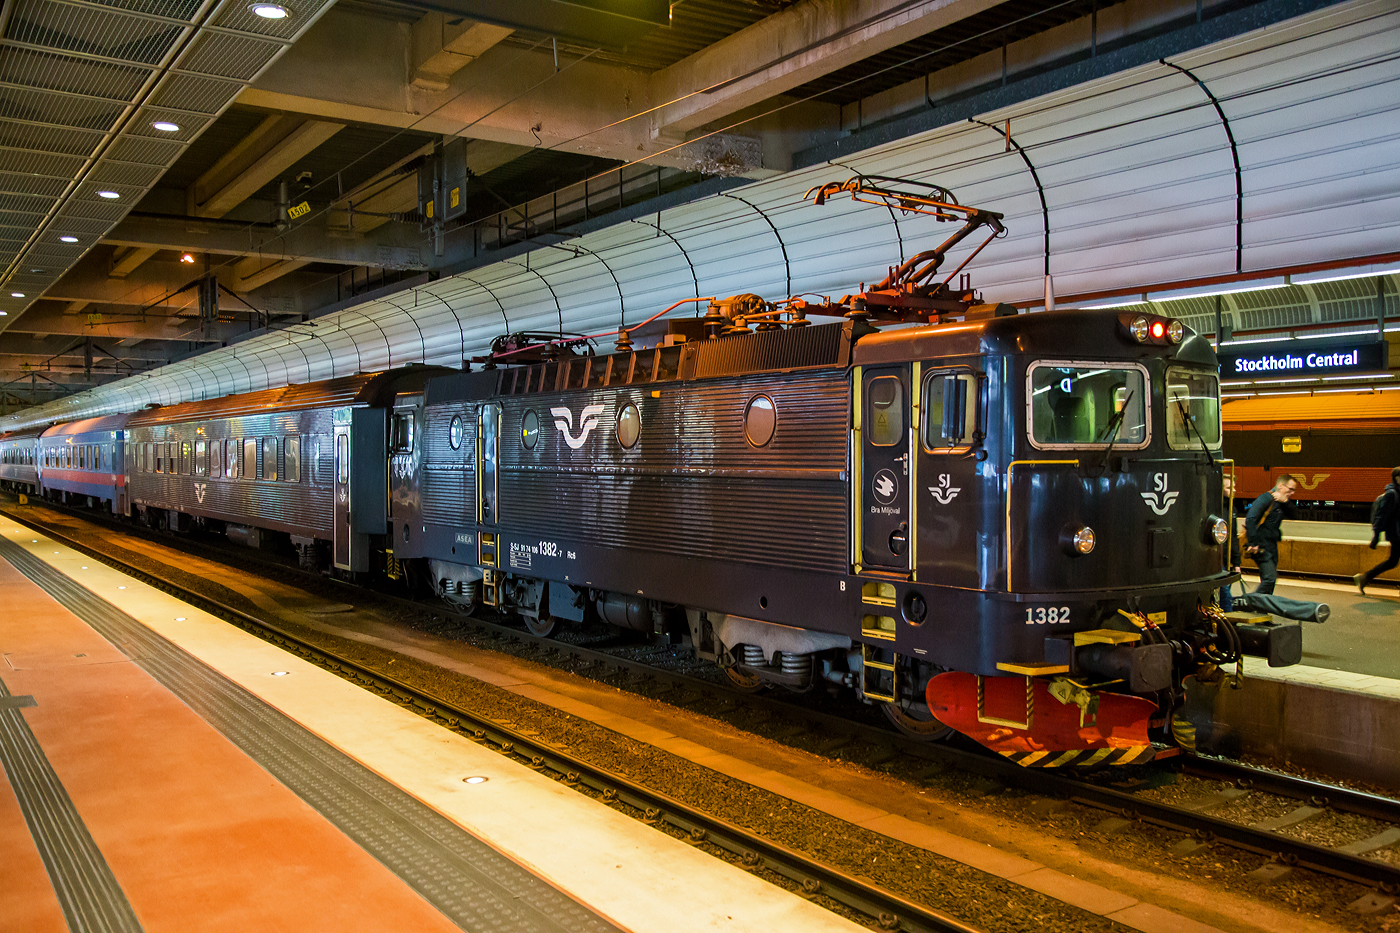 Die SJ Rc6U 1382 (S-SJ 91 74 1061 382-7), ex SJ Rc5 1382, der SJ - Statens Järnvägar AB (ehemalige Schwedischen Staatsbahnen) hat am 21 März 2019 mit einem Personenzug Stockholm Central (Stockholm Hbf) erreicht.

Die fünfte Serie (der Rc-Loks) wurde von 1982 bis 1986 in 60 Exemplaren geliefert. Sie erhielten die Nummern 1323–1388. Wie die Rc1, die Rc2 und die Rc4 erreichten sie eine Höchstgeschwindigkeit von 135 km/h. Sie wurden in ganz Schweden im Reise- und Güterzugdienst eingesetzt.

Von der Rc4 zur Rc5 gab es einen Entwicklungssprung. Die Maschinen erhielten nach neuesten ergonomischen Erkenntnissen ausgestattete Führerstände mit Klimaanlage. Für die Verglasung der Frontfenster wurde Panzerglas verwendet. Es kam eine modernere Version der Thyristor-Stromrichter sowie der Fahrmotoren zum Einsatz. Darüber hinaus wurden die Loks mit einer elektronischen Überwachung, einem Fahrzeugcomputer, ausgerüstet, der Störungen zur Vorbereitung des nächsten Werkstattaufenthaltes in den Führerstand meldet. Optisch unterscheiden sie sich von den früheren Serien durch größere Lufteinlässe, die sich seitlich über die gesamte Dachkante hinziehen.

Danach folgten zwischen 1985 und 1988 gebauten 40 Lokomotiven der Bauserie Rc6 mit den Nummern 1383–1422, dieses war auch die letzte original gebaute Serie. Wie die Rc3 waren diese ab Werk für eine Höchstgeschwindigkeit 160 km/h ausgelegt. Der steigende Bedarf der SJ an schnellfahrenden Lokomotiven für Reisezüge mit einer Höchstgeschwindigkeit von 160 km/h führte dann dazu, dass zwischen 1992 und 1995 alle 60 Rc5-Lokomotiven in Rc6 umgebaut wurden. Sie behielten aber ihre Nummern 1323 bis 1388, so besaß die SJ dann 100 Loks der Baureihe Rc6 (aber keine Rc5 mehr).

SJ Rc6U
Die Rc6 1348–1382 (ex Rc5-Loks) wurden mit SMS-Ausrüstung (schwedisch seriell multipelstyrning) versehen und intern mit der Baureihenbezeichnung Rc6U versehen. Dies wurde an den Fahrzeugen nicht angeschrieben, wird jedoch so im Fahrzeugplanungssystem, in den Fahrzeuglisten und den Werkstattsystemen so verwendet. Diese Technik ermöglicht eine Vielfachsteuerung der Lokomotiven über UIC-Kabel. Sie wurde erstmals verwendet, als SJ drei Steuerwagen der Baureihe AFM7 für den Verkehr zwischen Stockholm und Uppsala beschafften. Die SMS-Ausrüstung war erforderlich, um die Lokomotive vom Steuerwagen aus bedienen zu können. Heute wird sie dort verwendet, wo Züge mit je einer Lok an jedem Ende bespannt werden, wie im Mälardalen, um kurze Wendezeiten der Züge zu erreichen.

Die SJ Rc6U 1382 (diese hier) wurde 1985 von ASEA (Allmänna Svenska Elektriska Aktiebolaget) in Stockholm unter der Fabriknummer 1976 gebaut und an die SJ geliefert. Im Jahr 1993 wurde sie zur Rc6 umgebaut. 

TECHNISCHE DATEN der Rc6:
Hersteller: AESA (heute ABB)
Nummerierung: 1323 bis 1382 (ex Rc 5) und 1383 bis 1422 
Baujahre: 1985 bis 1988(ursprüngliche Serie) und 1982-1986 (ex Rc 5)
Anzahl: 40 (ursprüngliche Serie) und 60 (ex Rc5)
Spurweite: 1.435 mm (Normalspur)
Achsformel: Bo'Bo'
Länge über Kupplung: 15.520 mm
Drehzapfenabstand: 7.700 mm
Achsabstand im Drehgestell: 2.700 mm
Treibraddurchmesser: 1.300 mm
Gewicht: 78 t
Höchstgeschwindigkeit: 160 km/h
Leistung: 3.600 kW (4 x 900 kW)
Anfahrzugkraft: 250 kN
Anzahl der Motoren: 4 Stück vom Typ LJM450 á 900 kW
Stromsystem: 15 kV 16 2/3 Hz ~